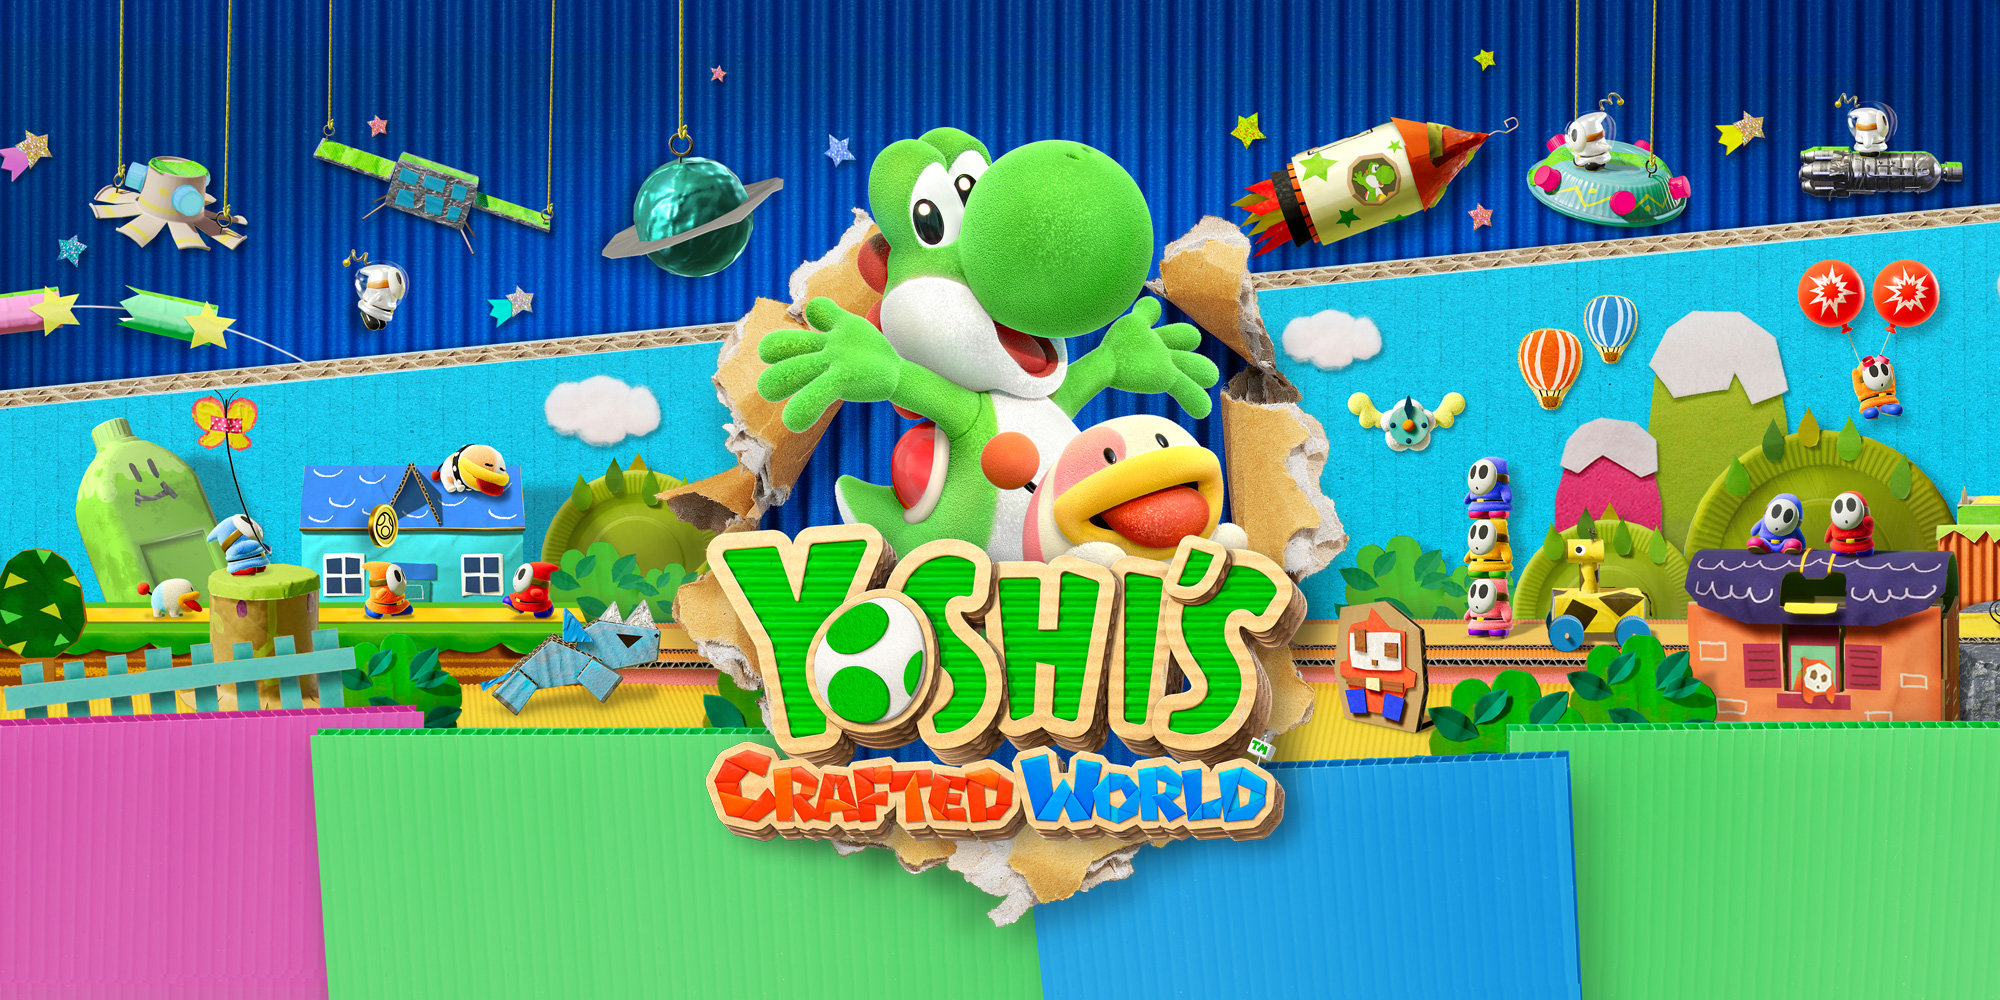 Jogue Super Mario World 2: Ilha de Yoshi, um jogo de Yoshi